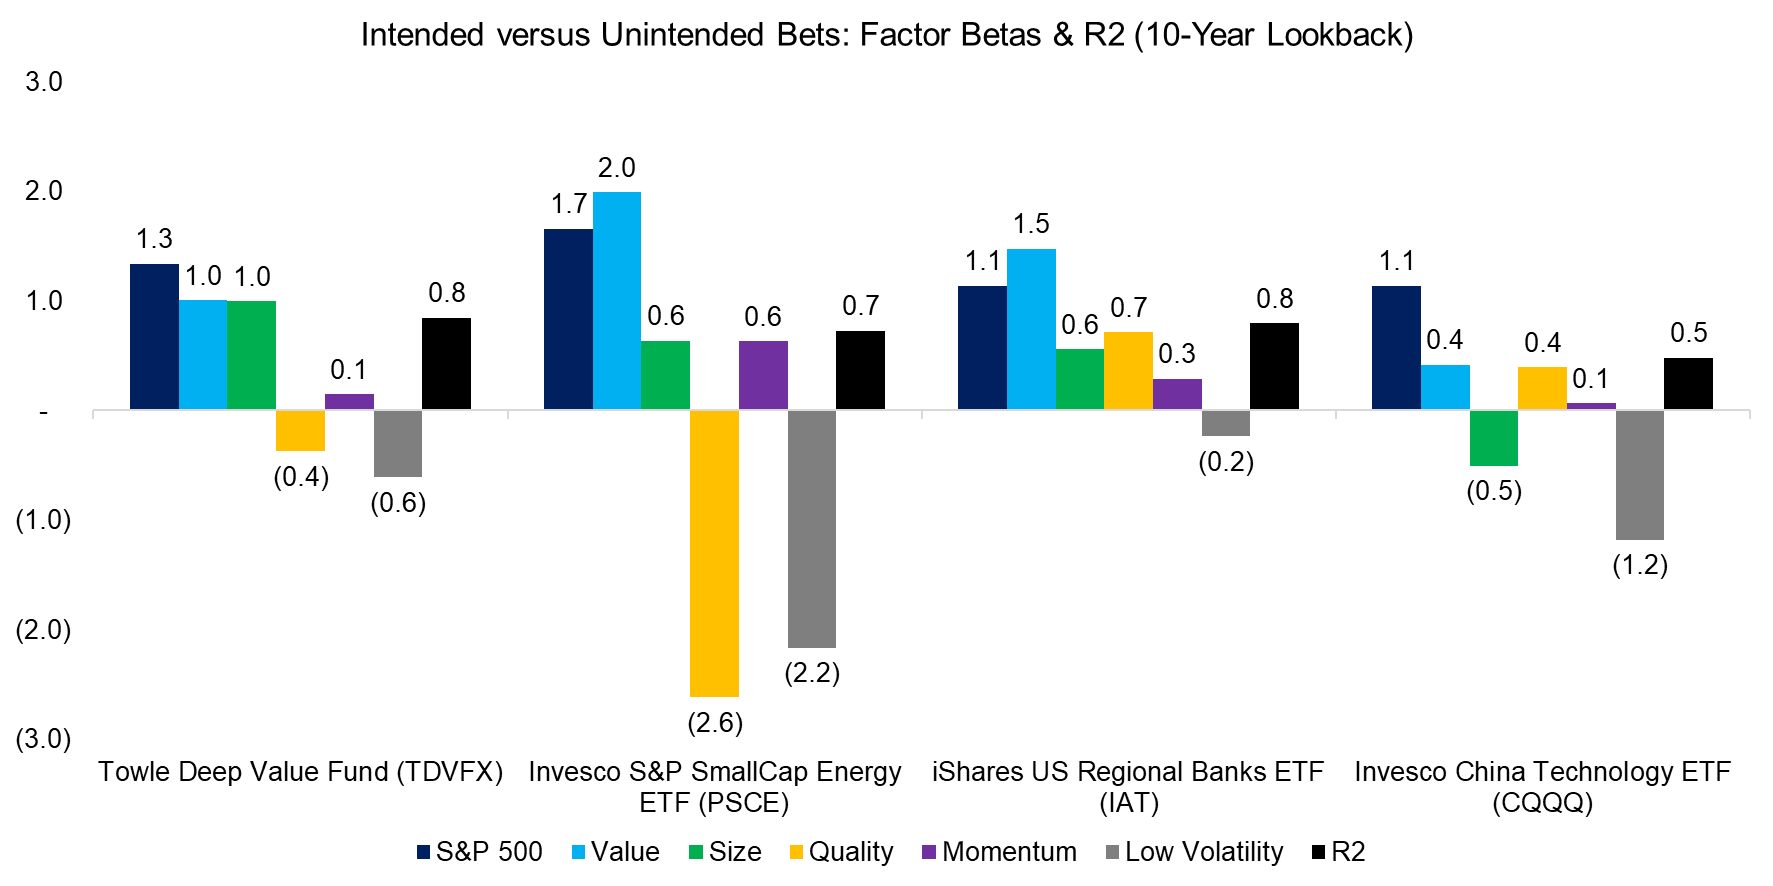 Intended versus Unintended Bets Factor Betas & R2 (10-Year Lookback)